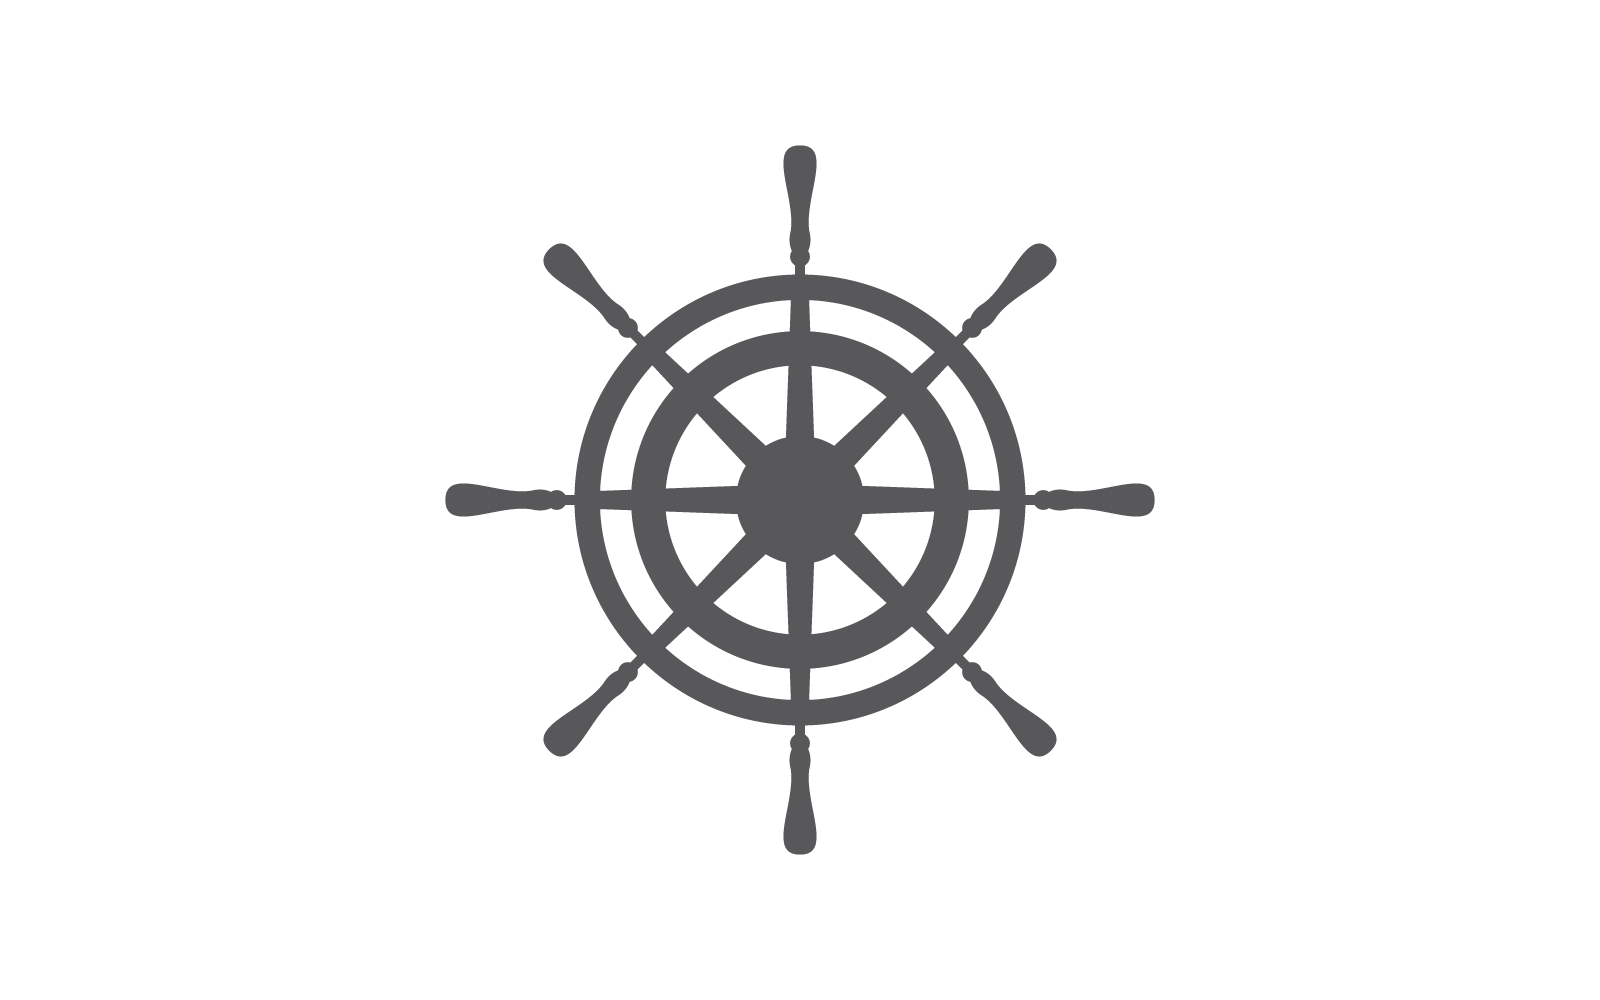 Ship wheel icon ilustration vector Logo Template